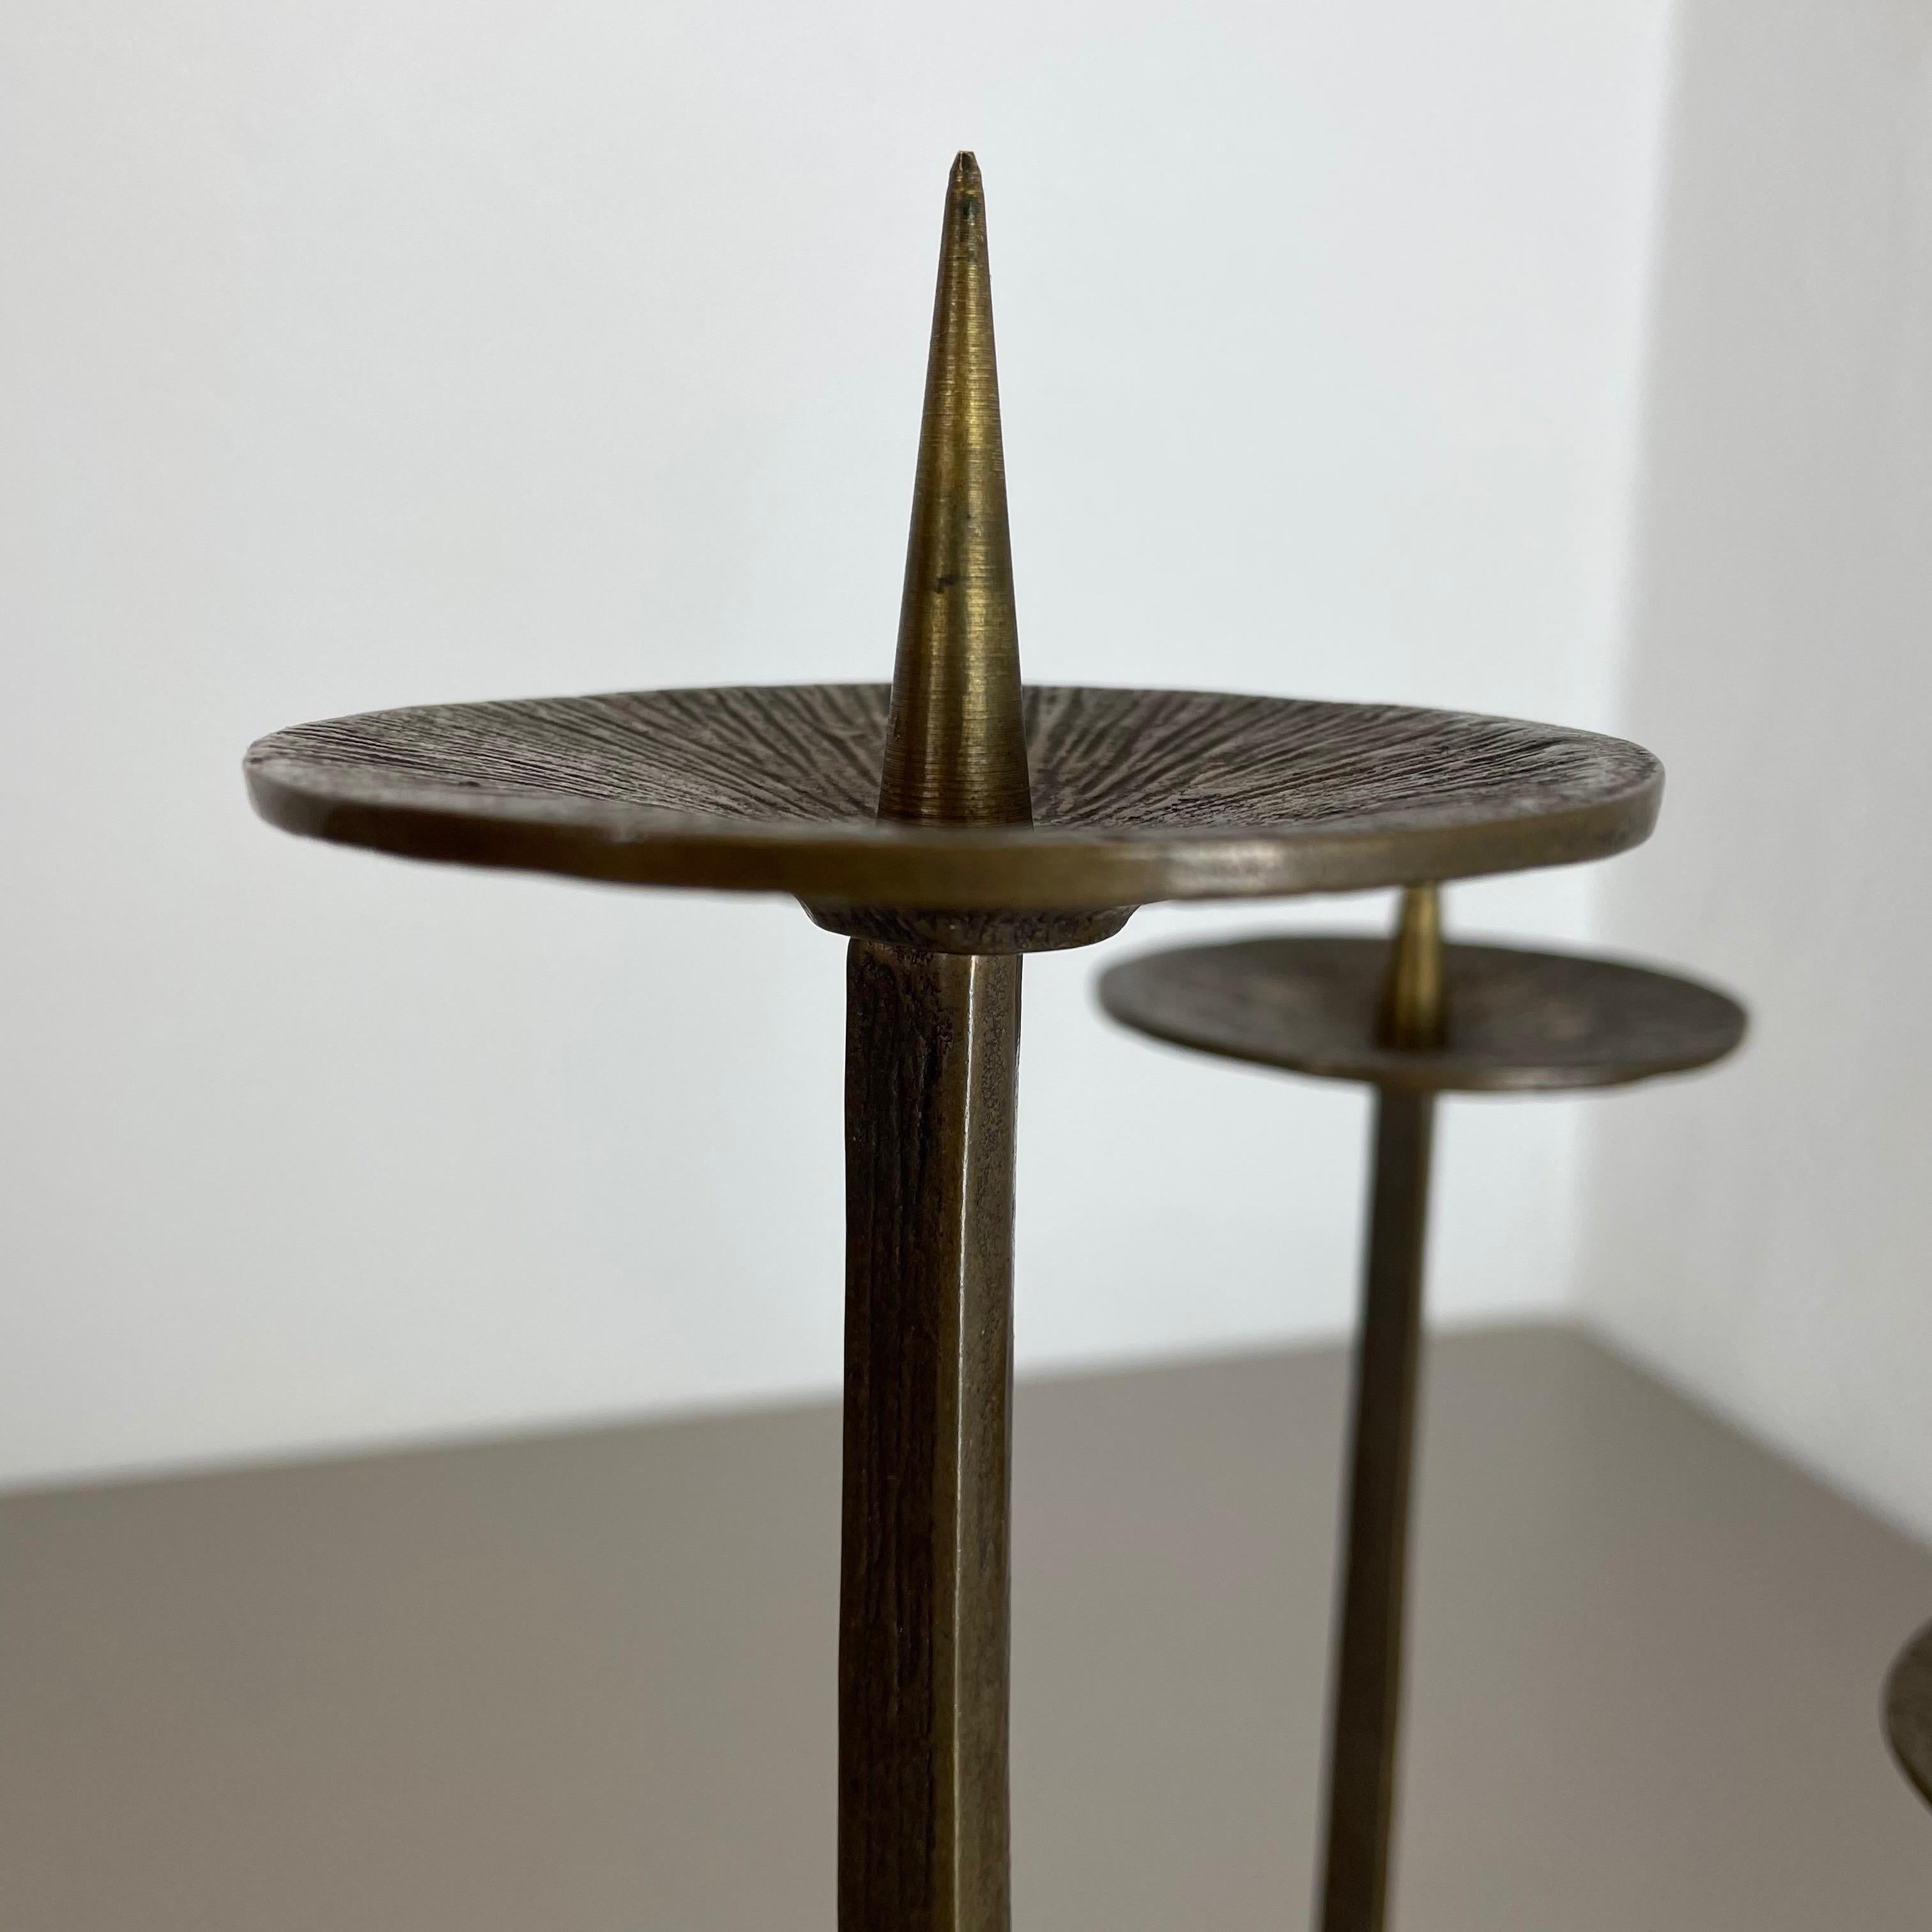 Modernist Sculptural Brutalist Bronze Metal Candleholder, France, 1970s For Sale 4